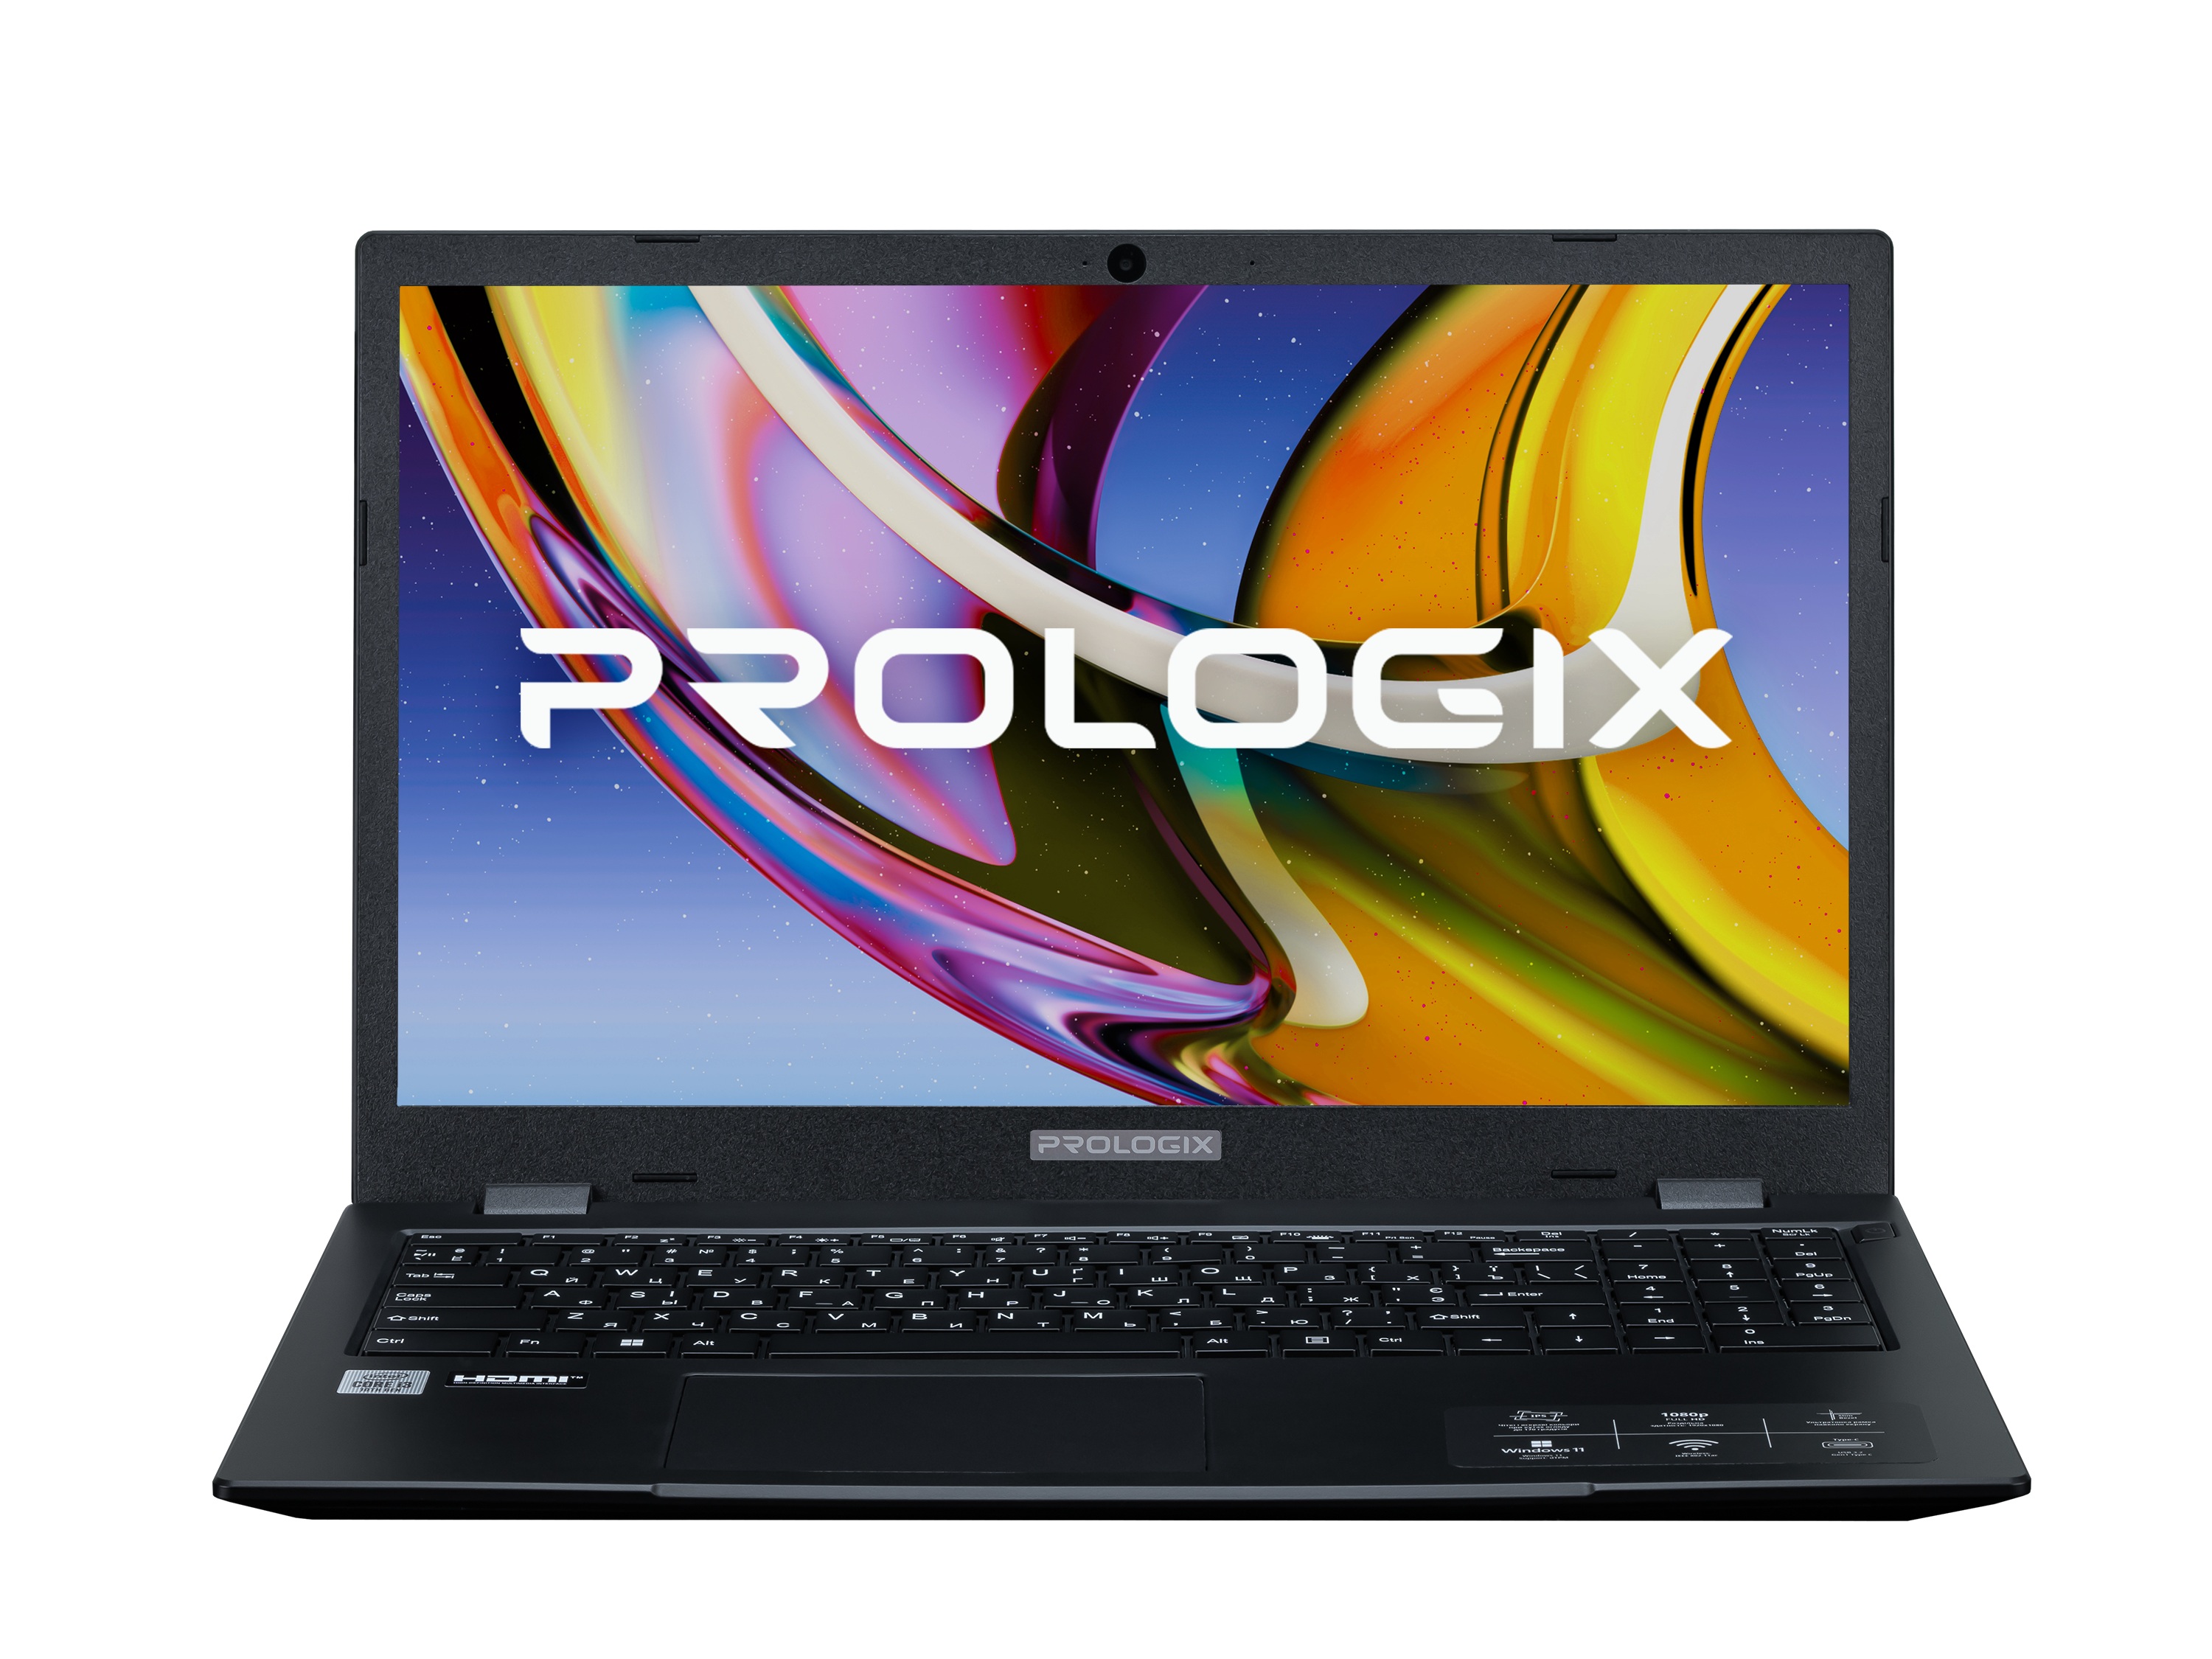 Ноутбук Prologix M15-720, 15.6" FHD IPS, Intel Core i3-10110U (4.1 Ghz), 8GB, 256GB, Intel UHD